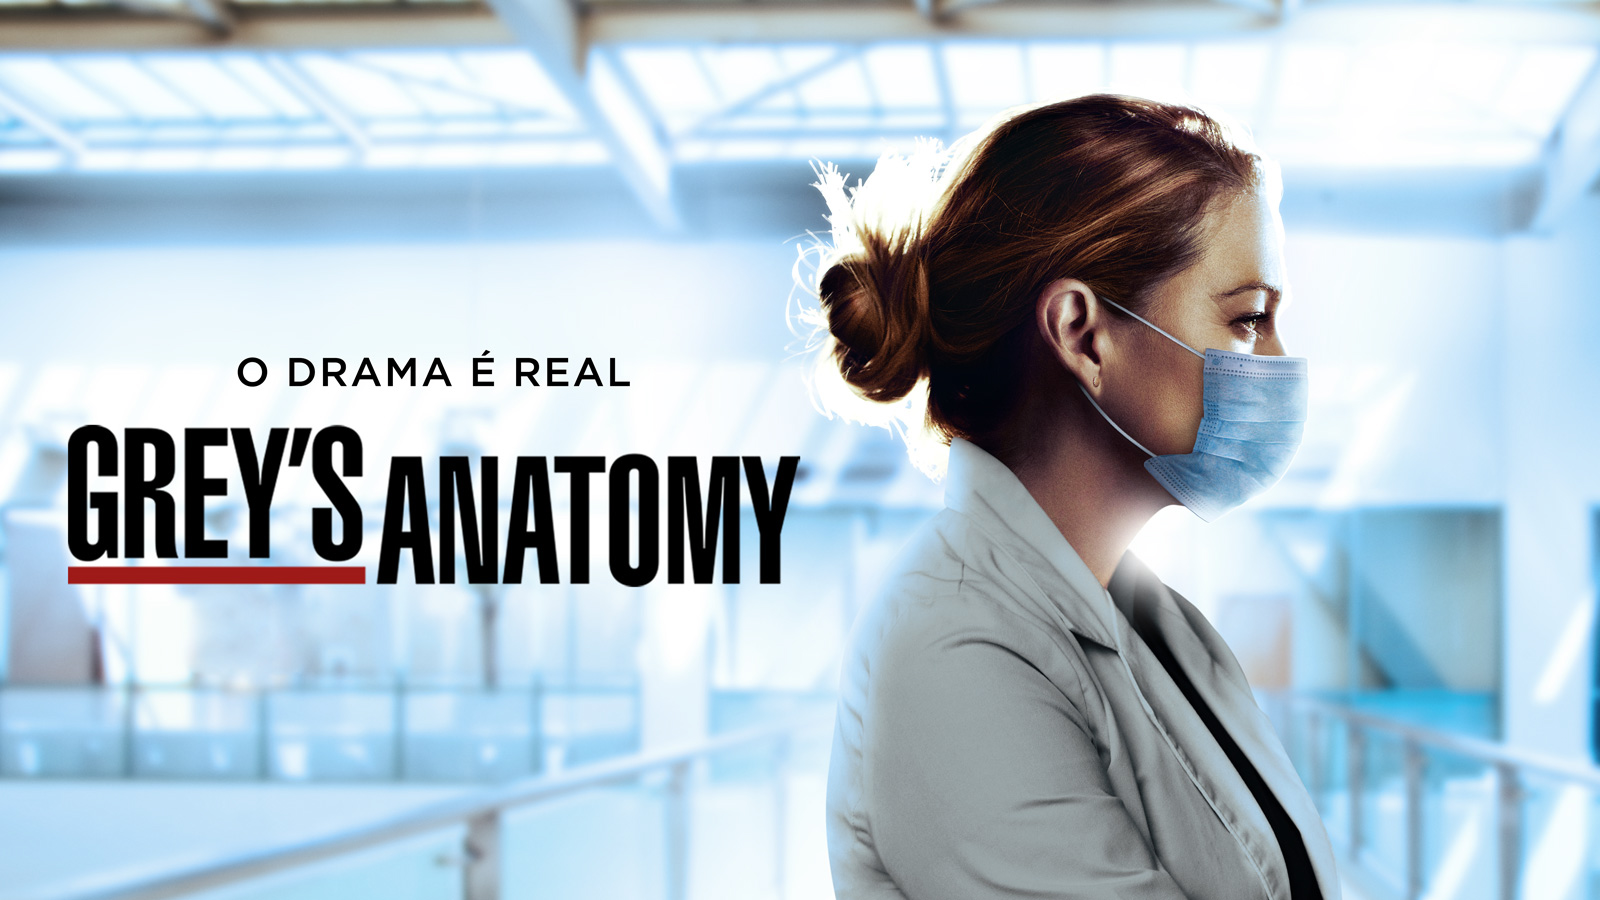 17ª temporada de Greys Anatomy está disponível na Netflix - News Rondônia